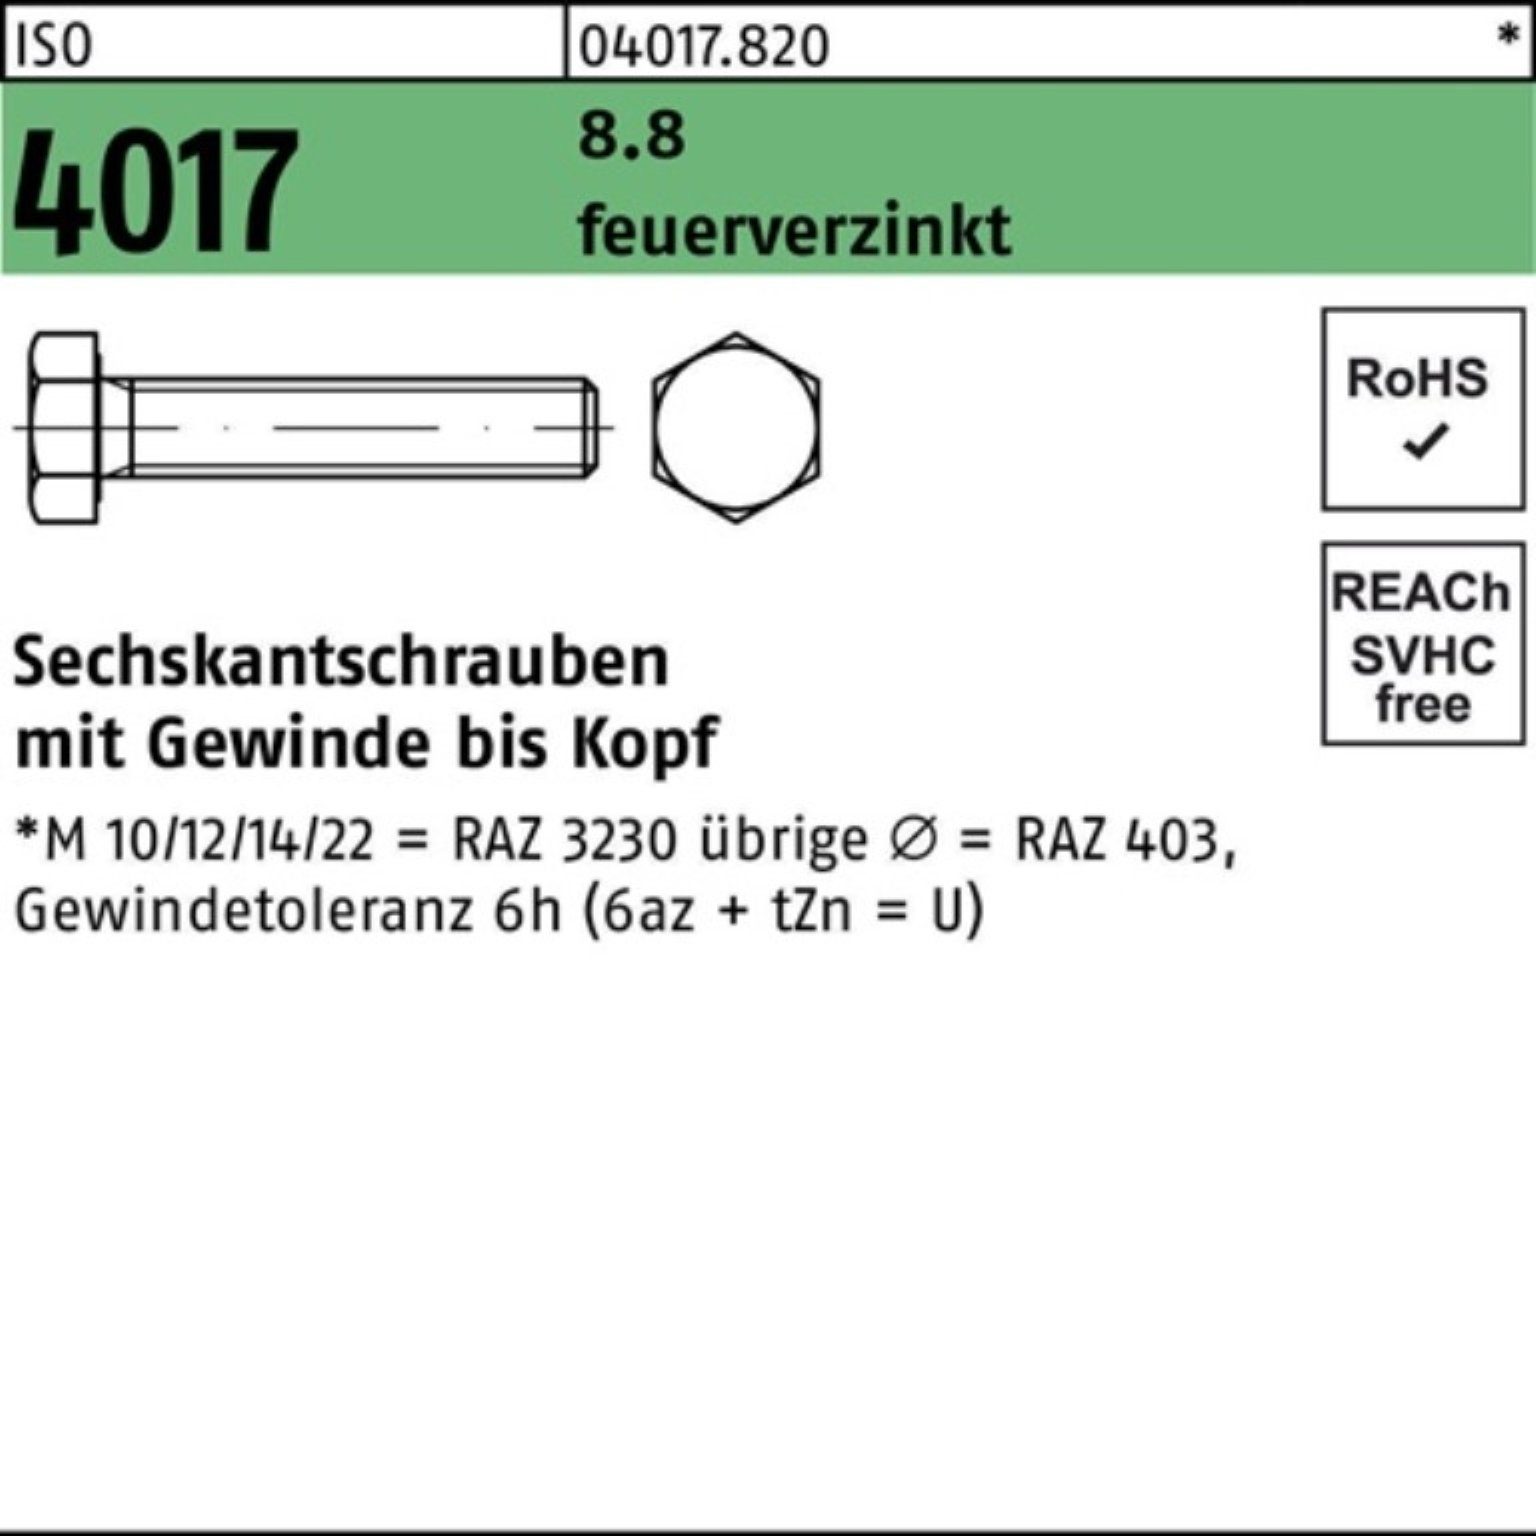 St Sechskantschraube feuerverz. 20 M8x 8.8 VG Bufab 200er ISO 200 Pack Sechskantschraube 4017